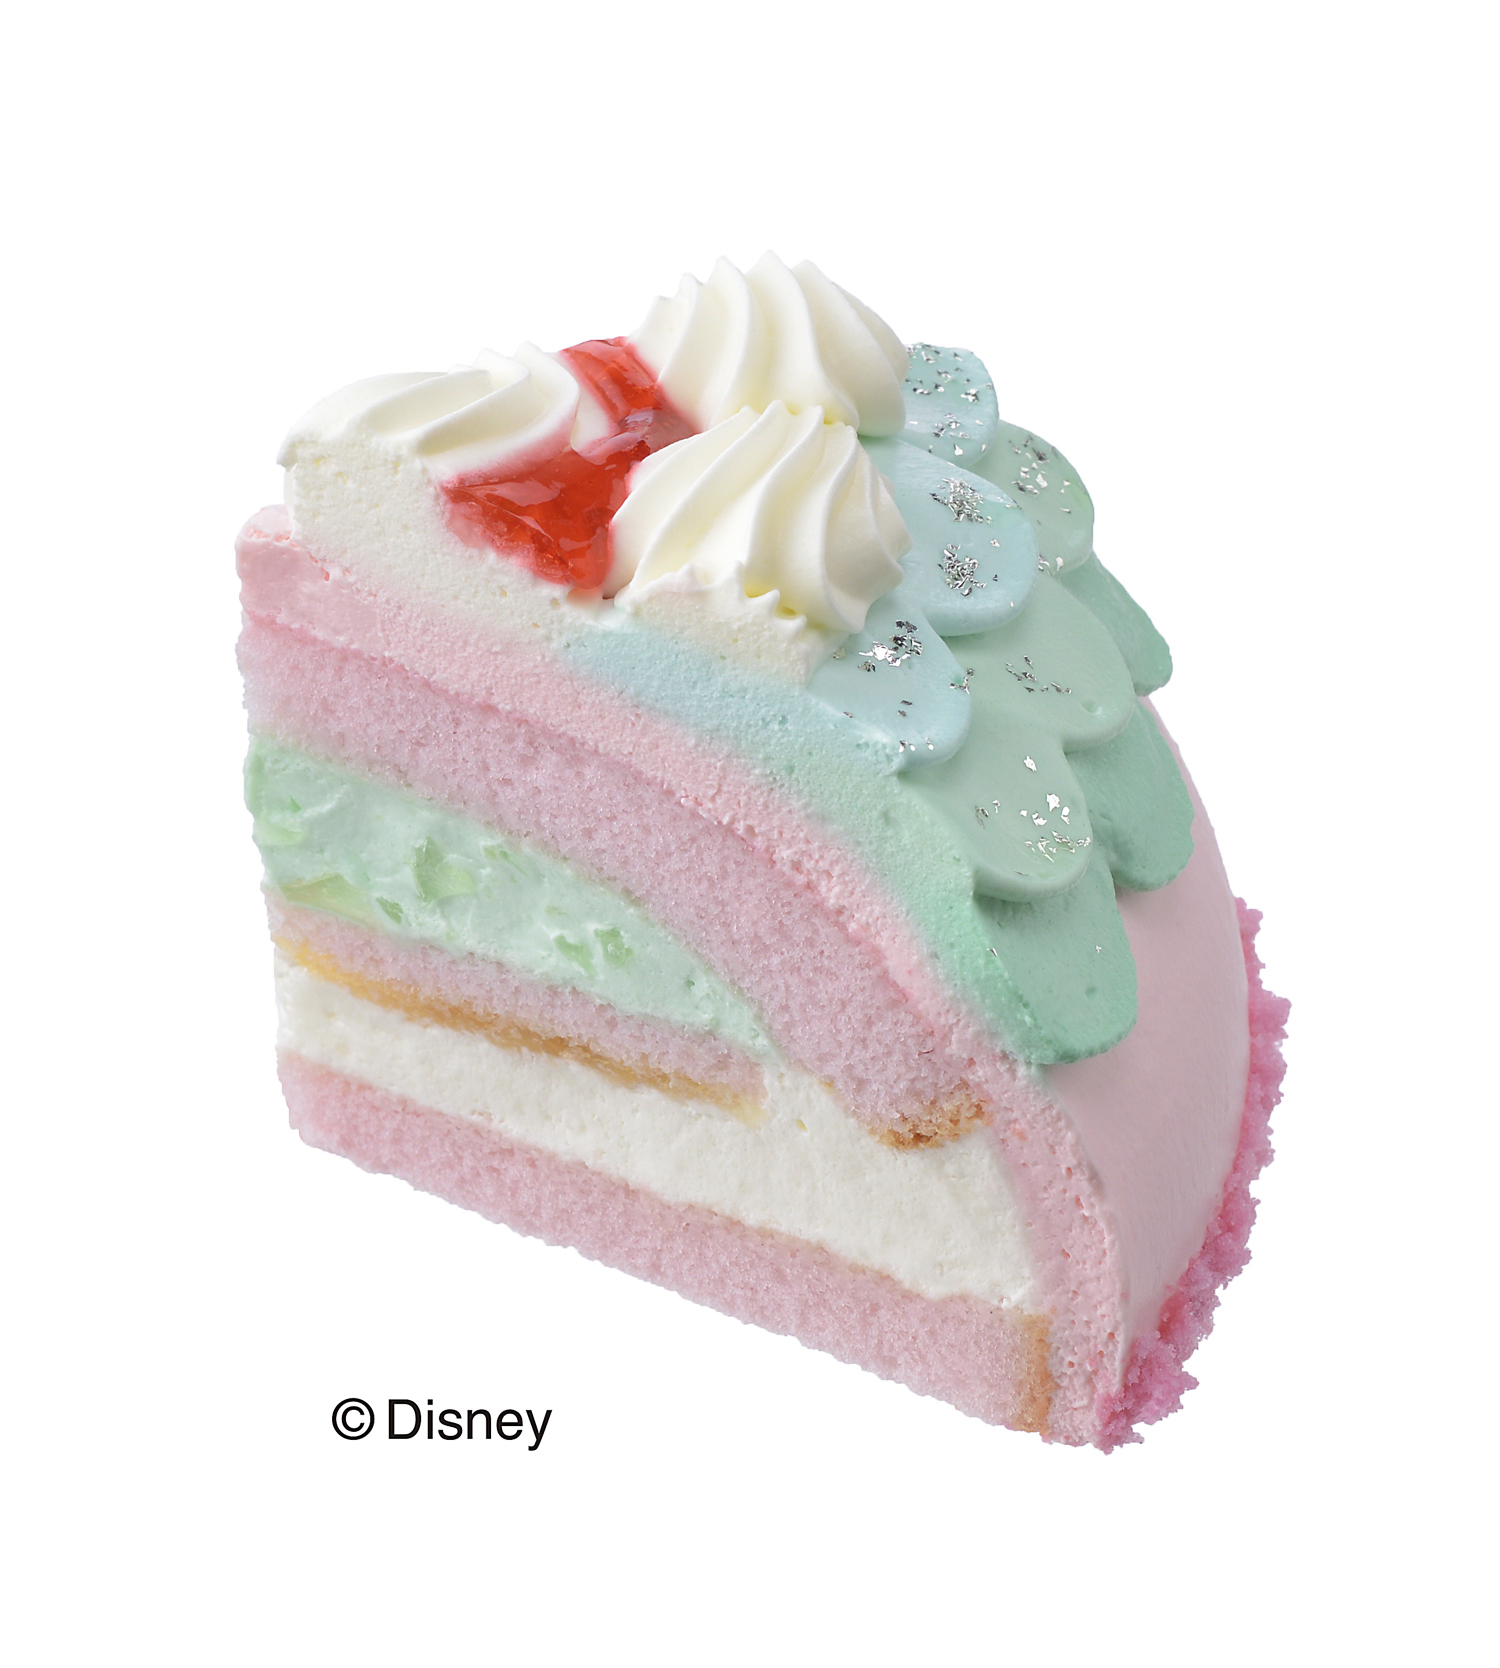 アリエルが暮らす海の王国を表現 コージーコーナーからディズニー人気作品 リトル マーメイド デザインのケーキ発売 Emo Miu エモミュー